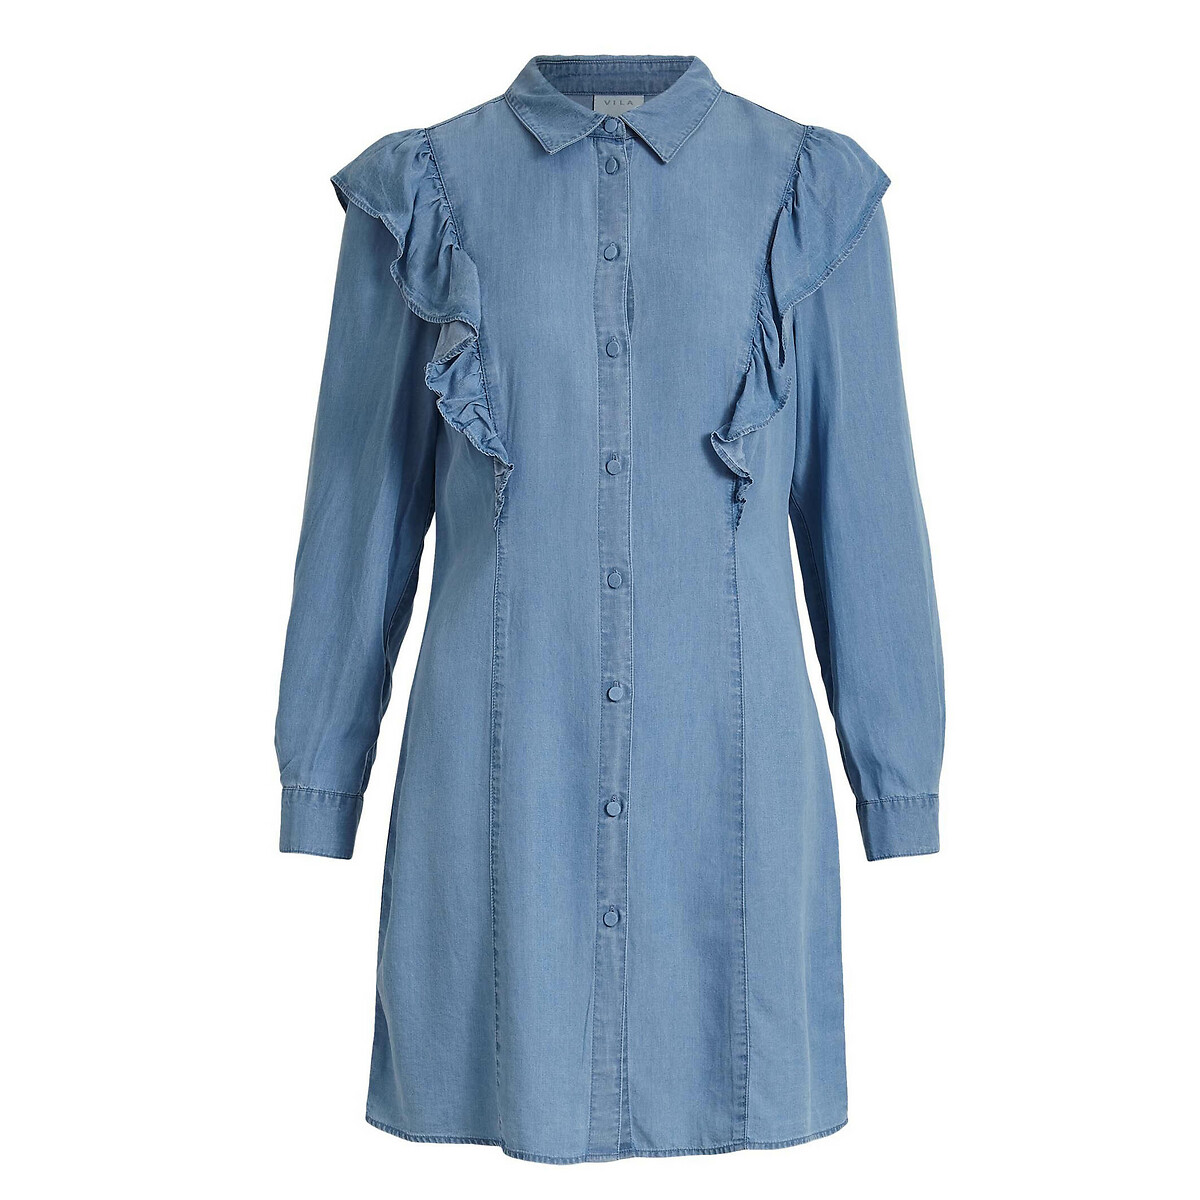 Платье-рубашка LaRedoute С воланами из джинсовой ткани 38 (FR) - 44 (RUS) синий, размер 38 (FR) - 44 (RUS) С воланами из джинсовой ткани 38 (FR) - 44 (RUS) синий - фото 5